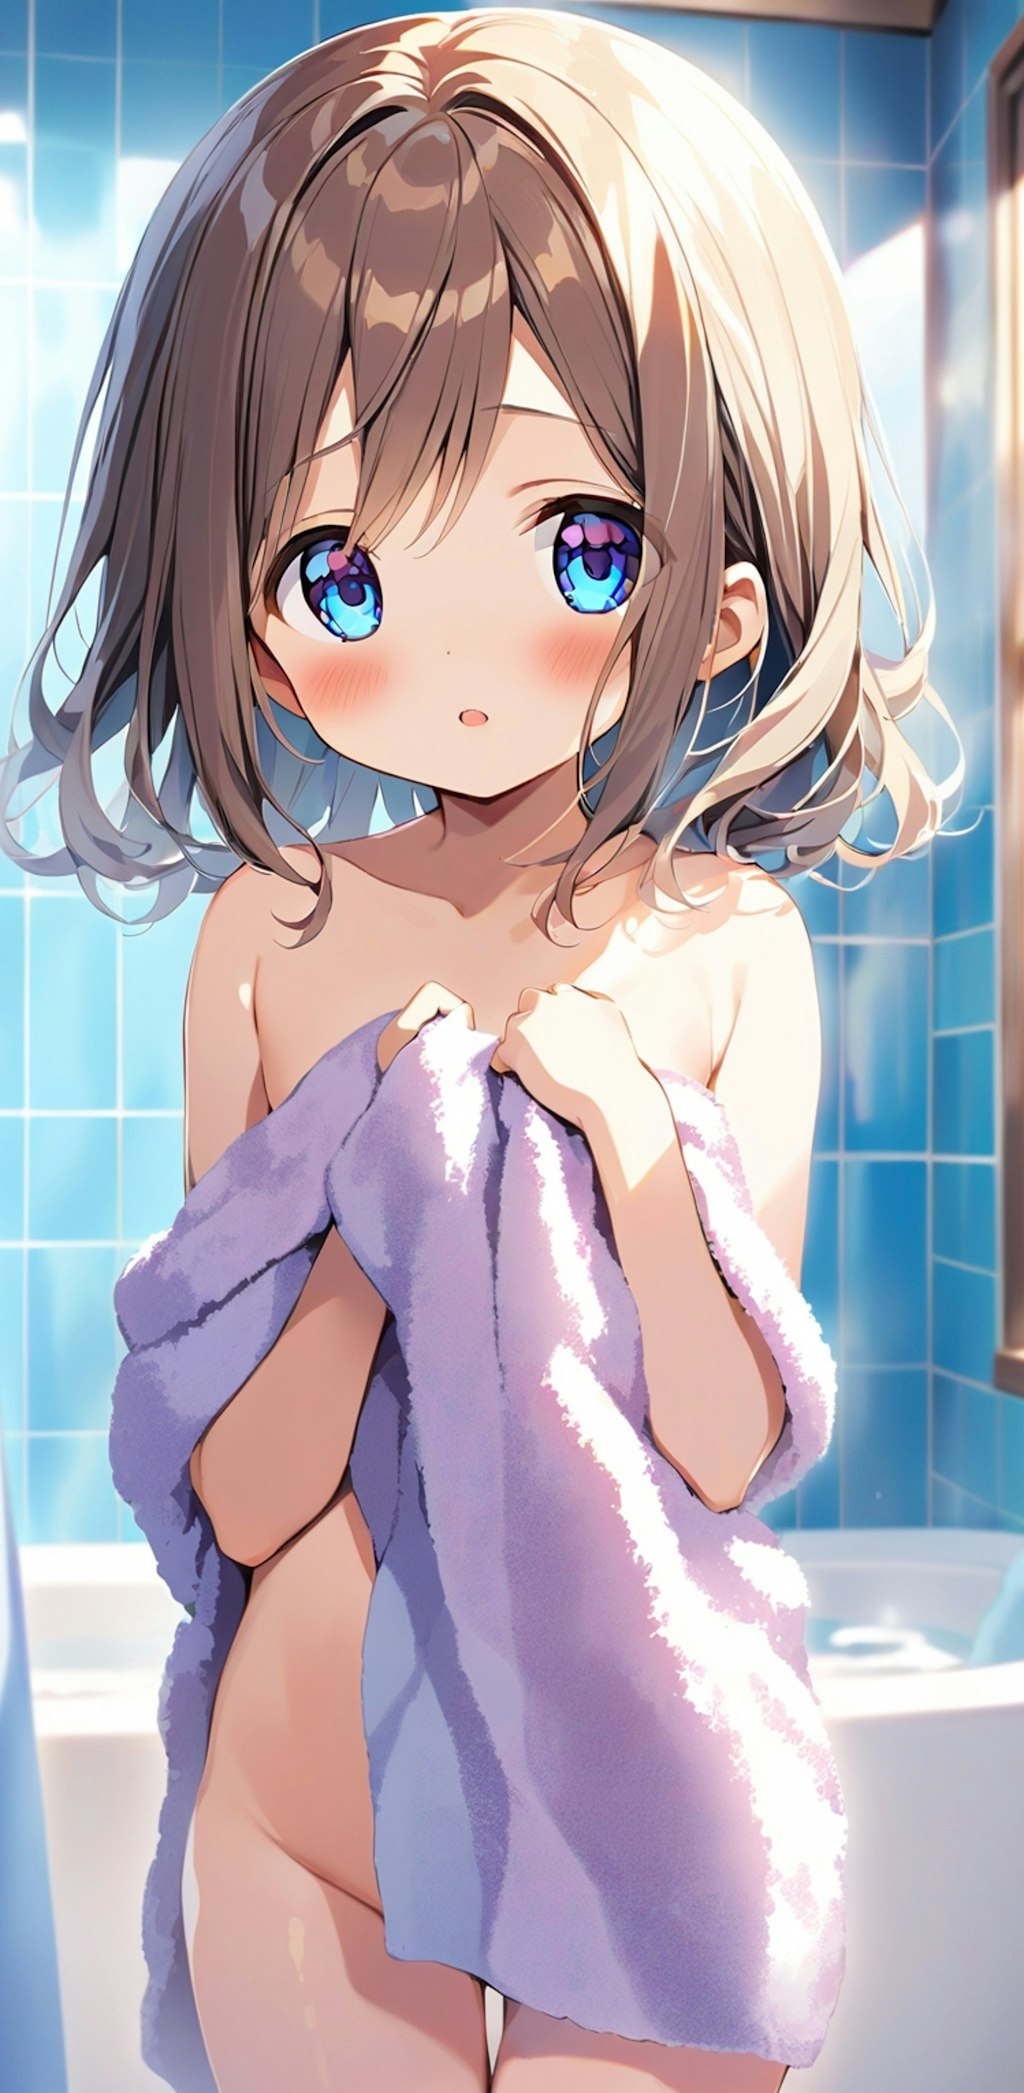 お風呂上がりのバスタオル娘5 『や、やっぱりダメ…えへっ♡』